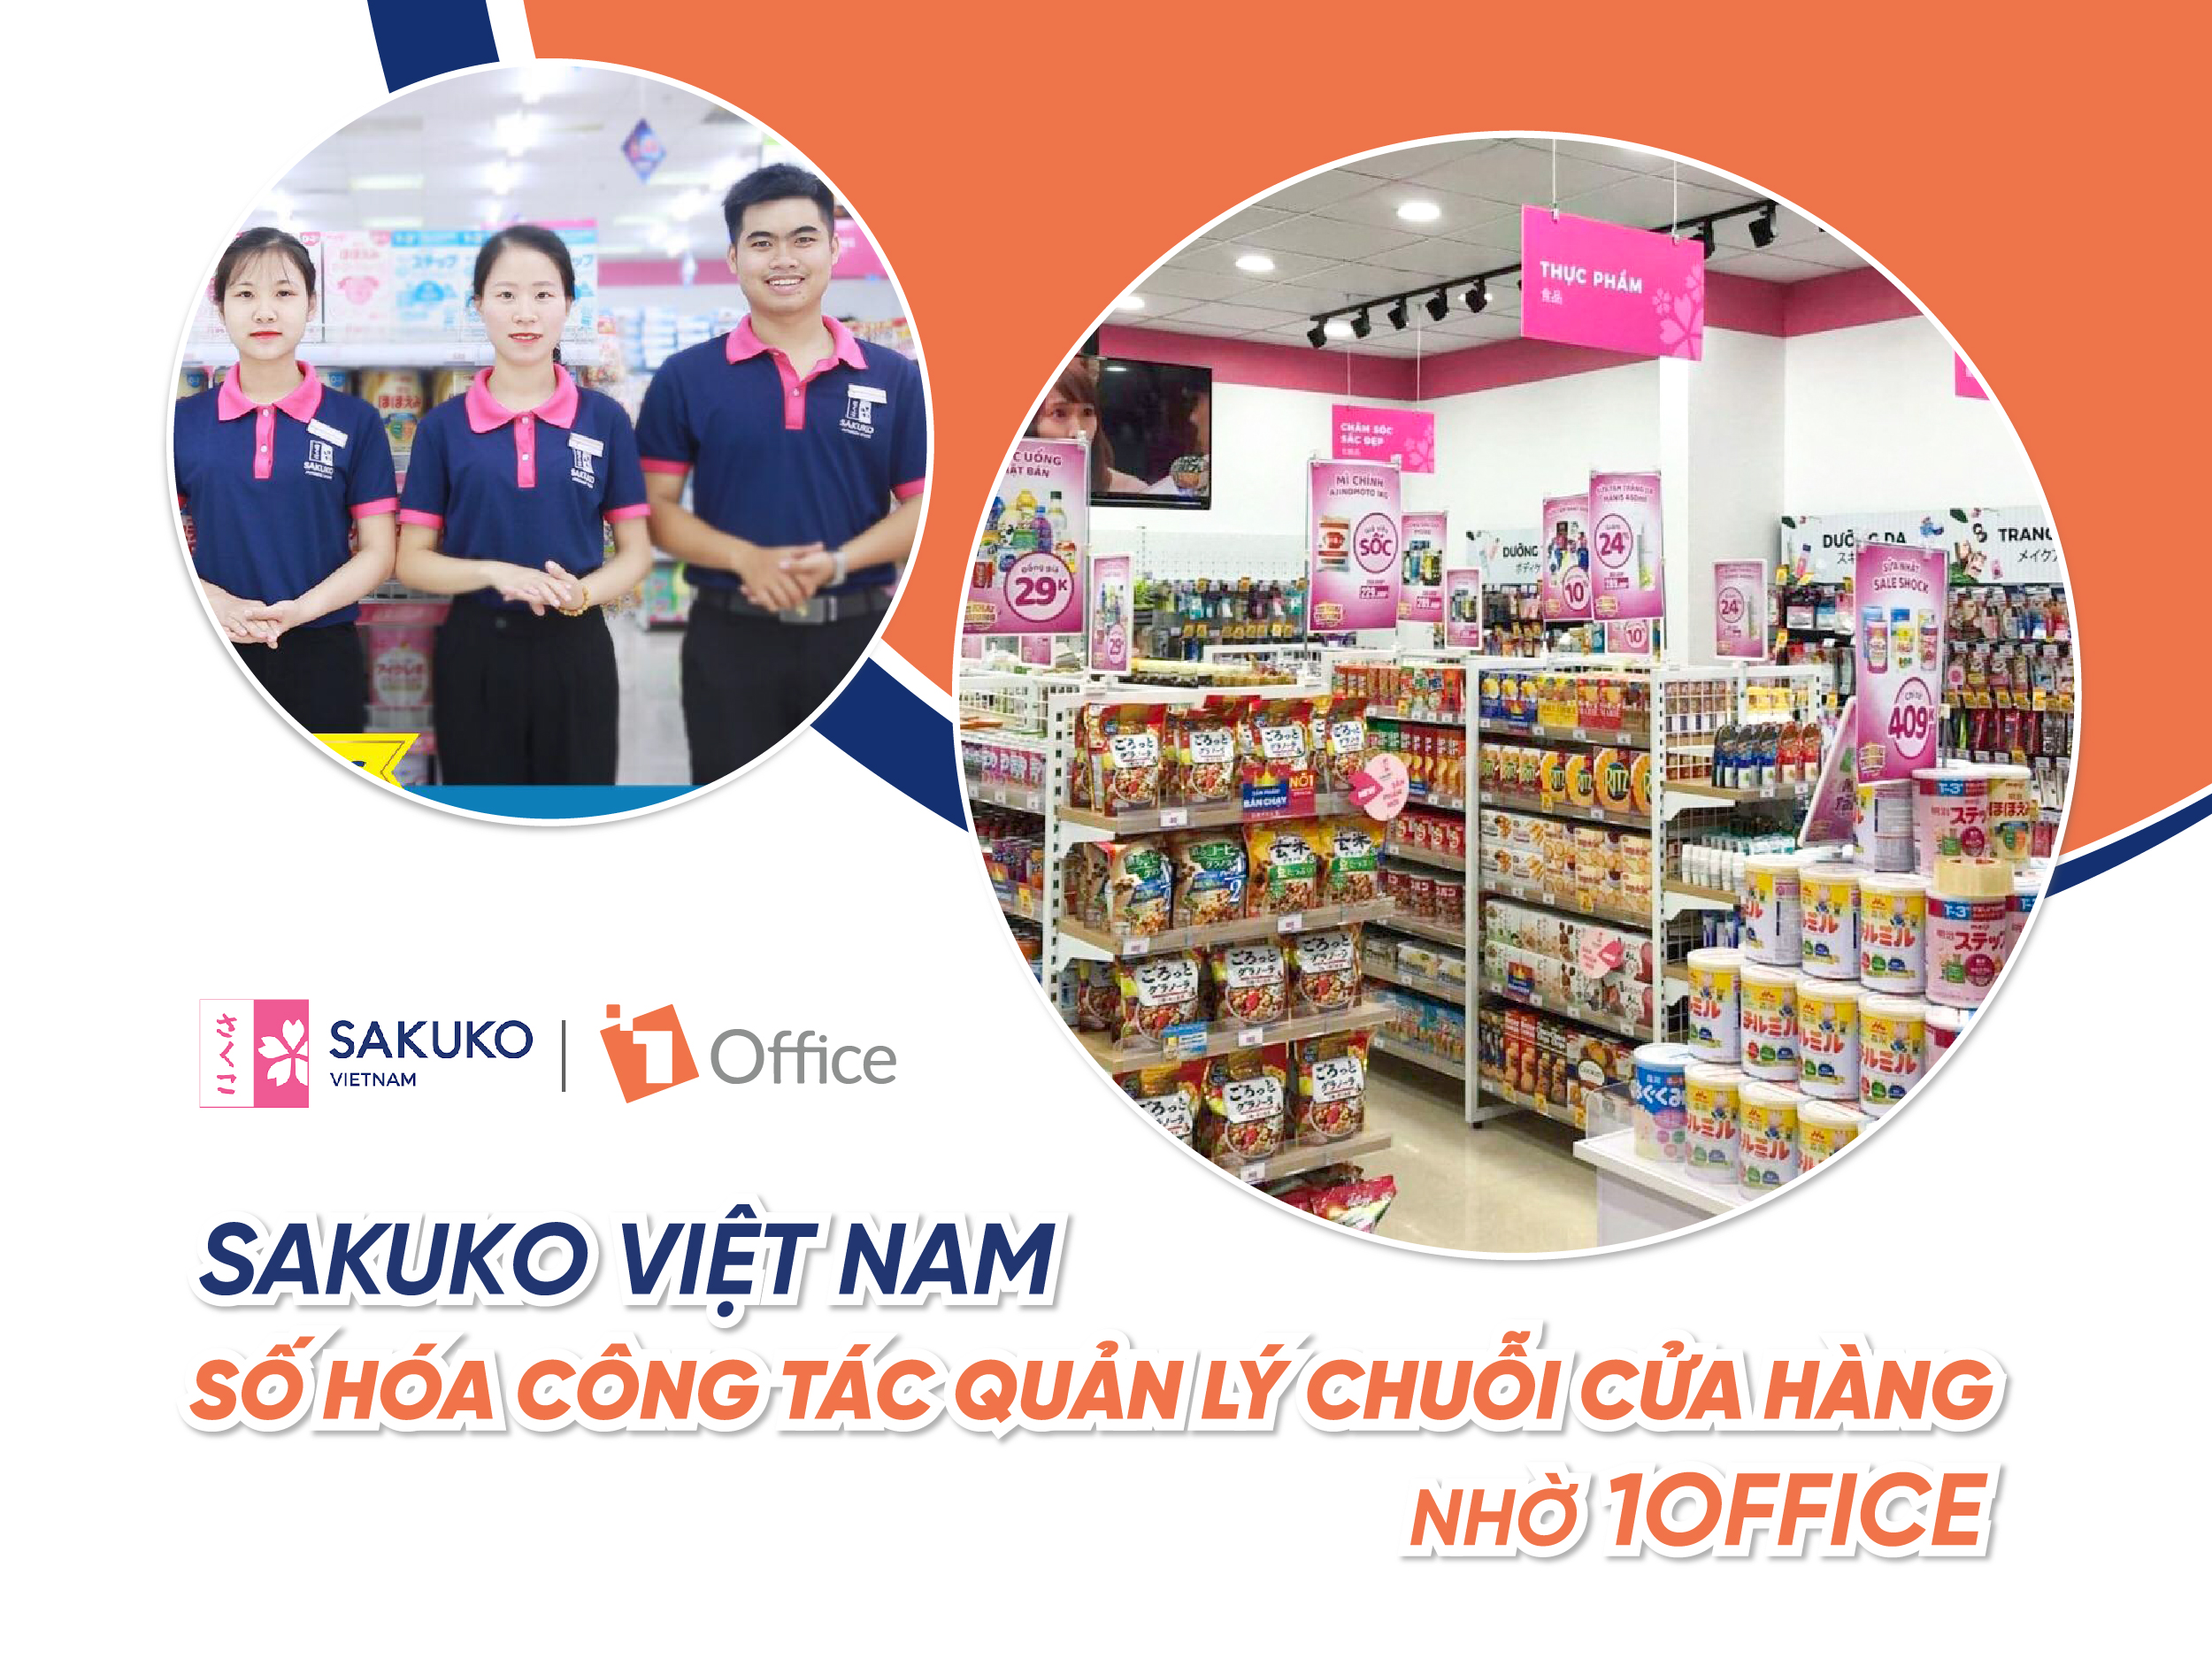 Sakuko Việt Nam: Số hóa công tác quản lý chuỗi cửa hàng nhờ 1Office